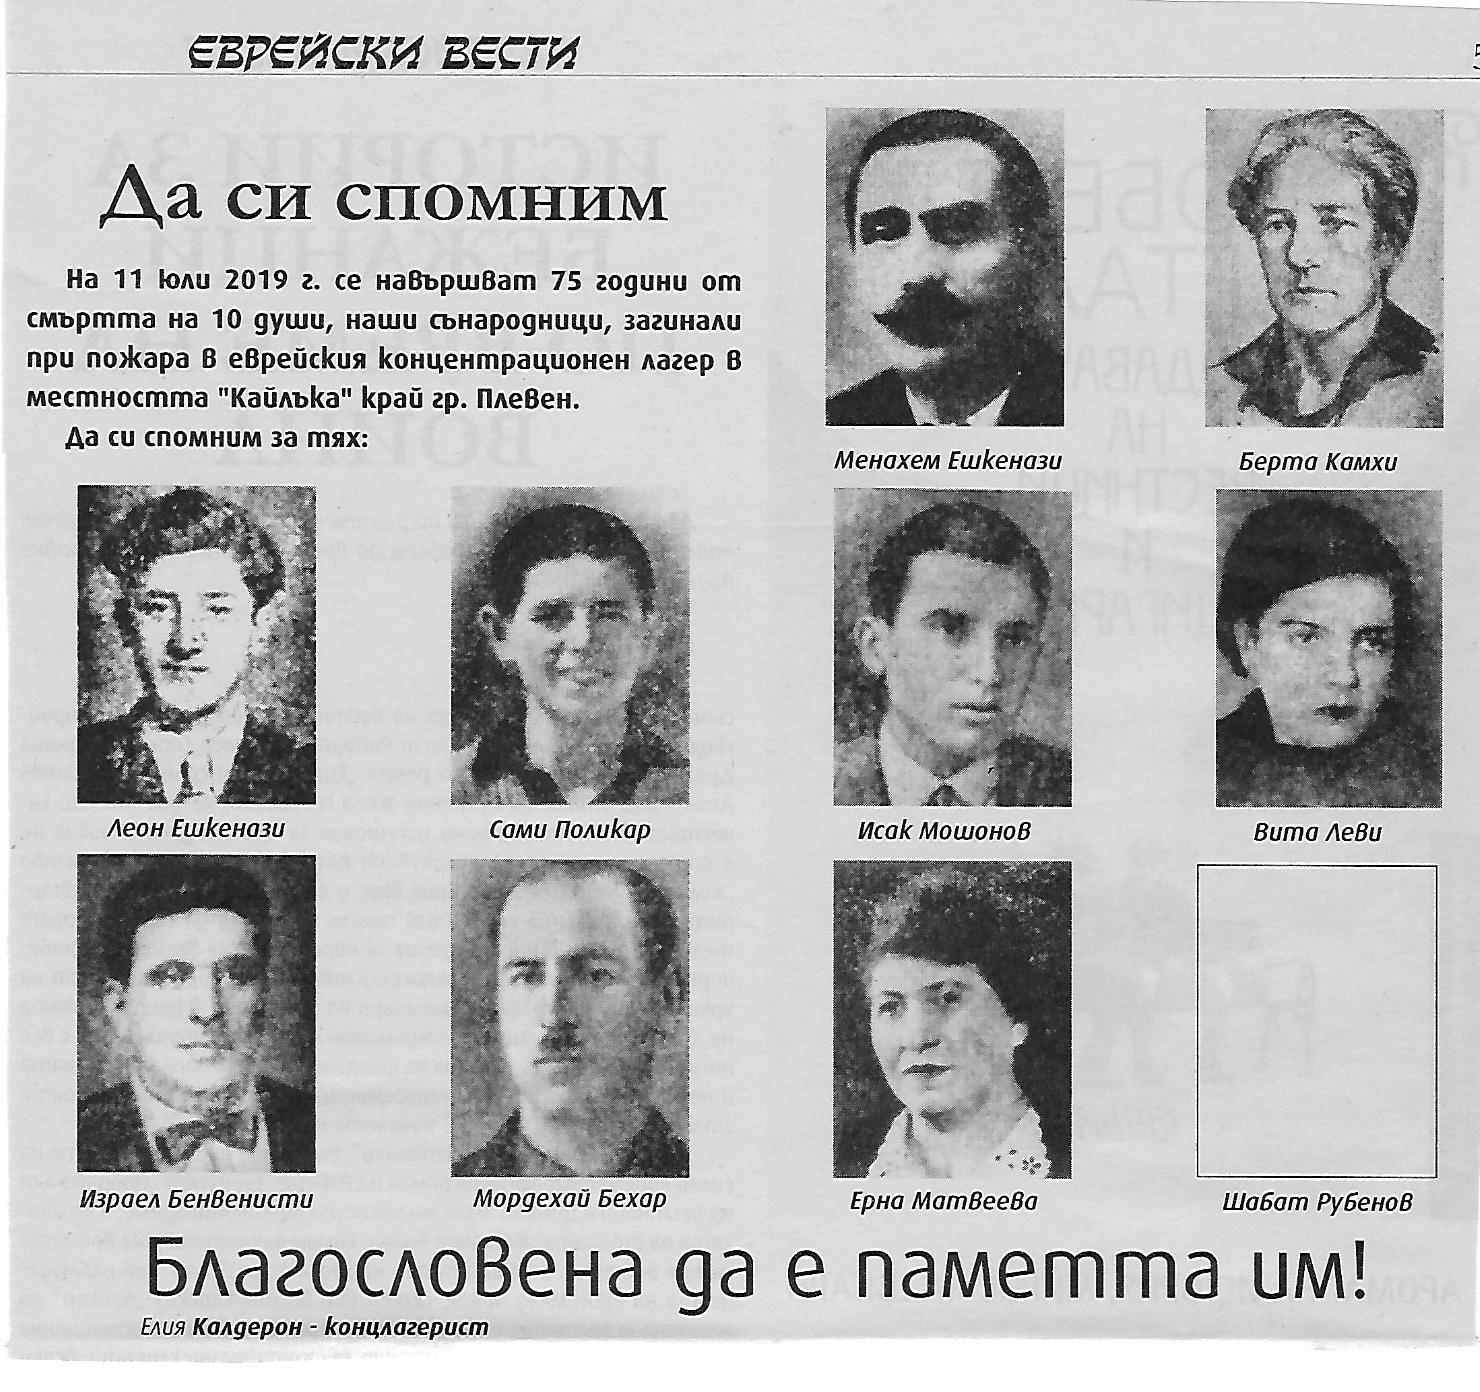 75 שנה למותם  הטראגי של 10 יהודי בולגריה  שנעצרו ע"י הפשיסטים (הגדל)